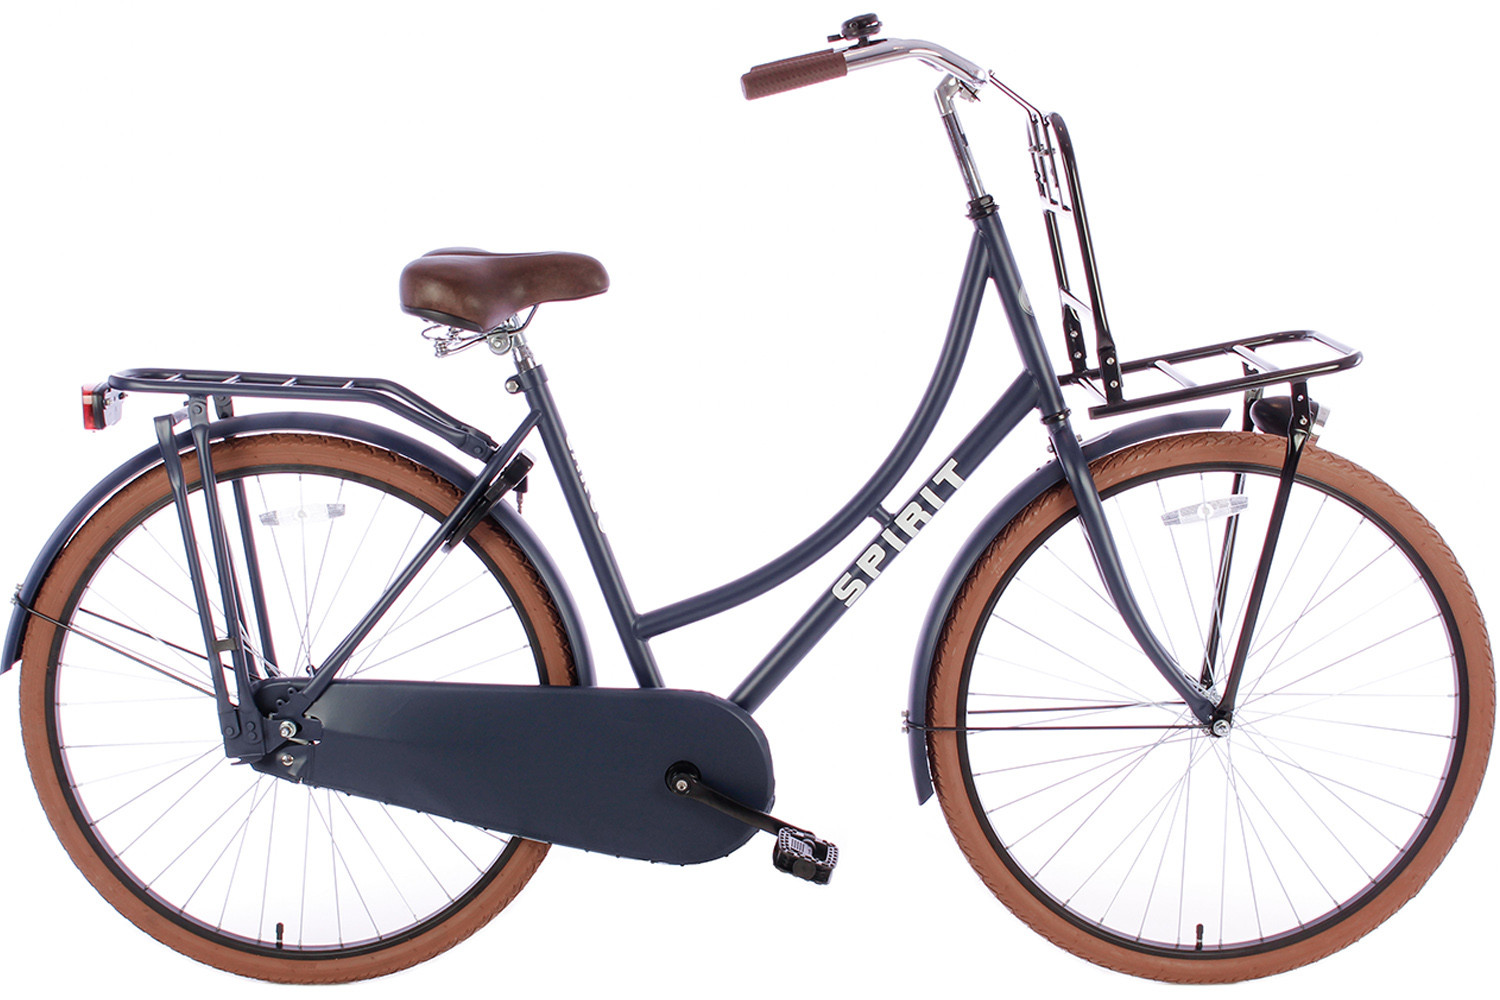 Maken Instrueren begrijpen Spirit Omafiets Deluxe Plus Jeans-blauw 28 inch - Bike 2 Bike